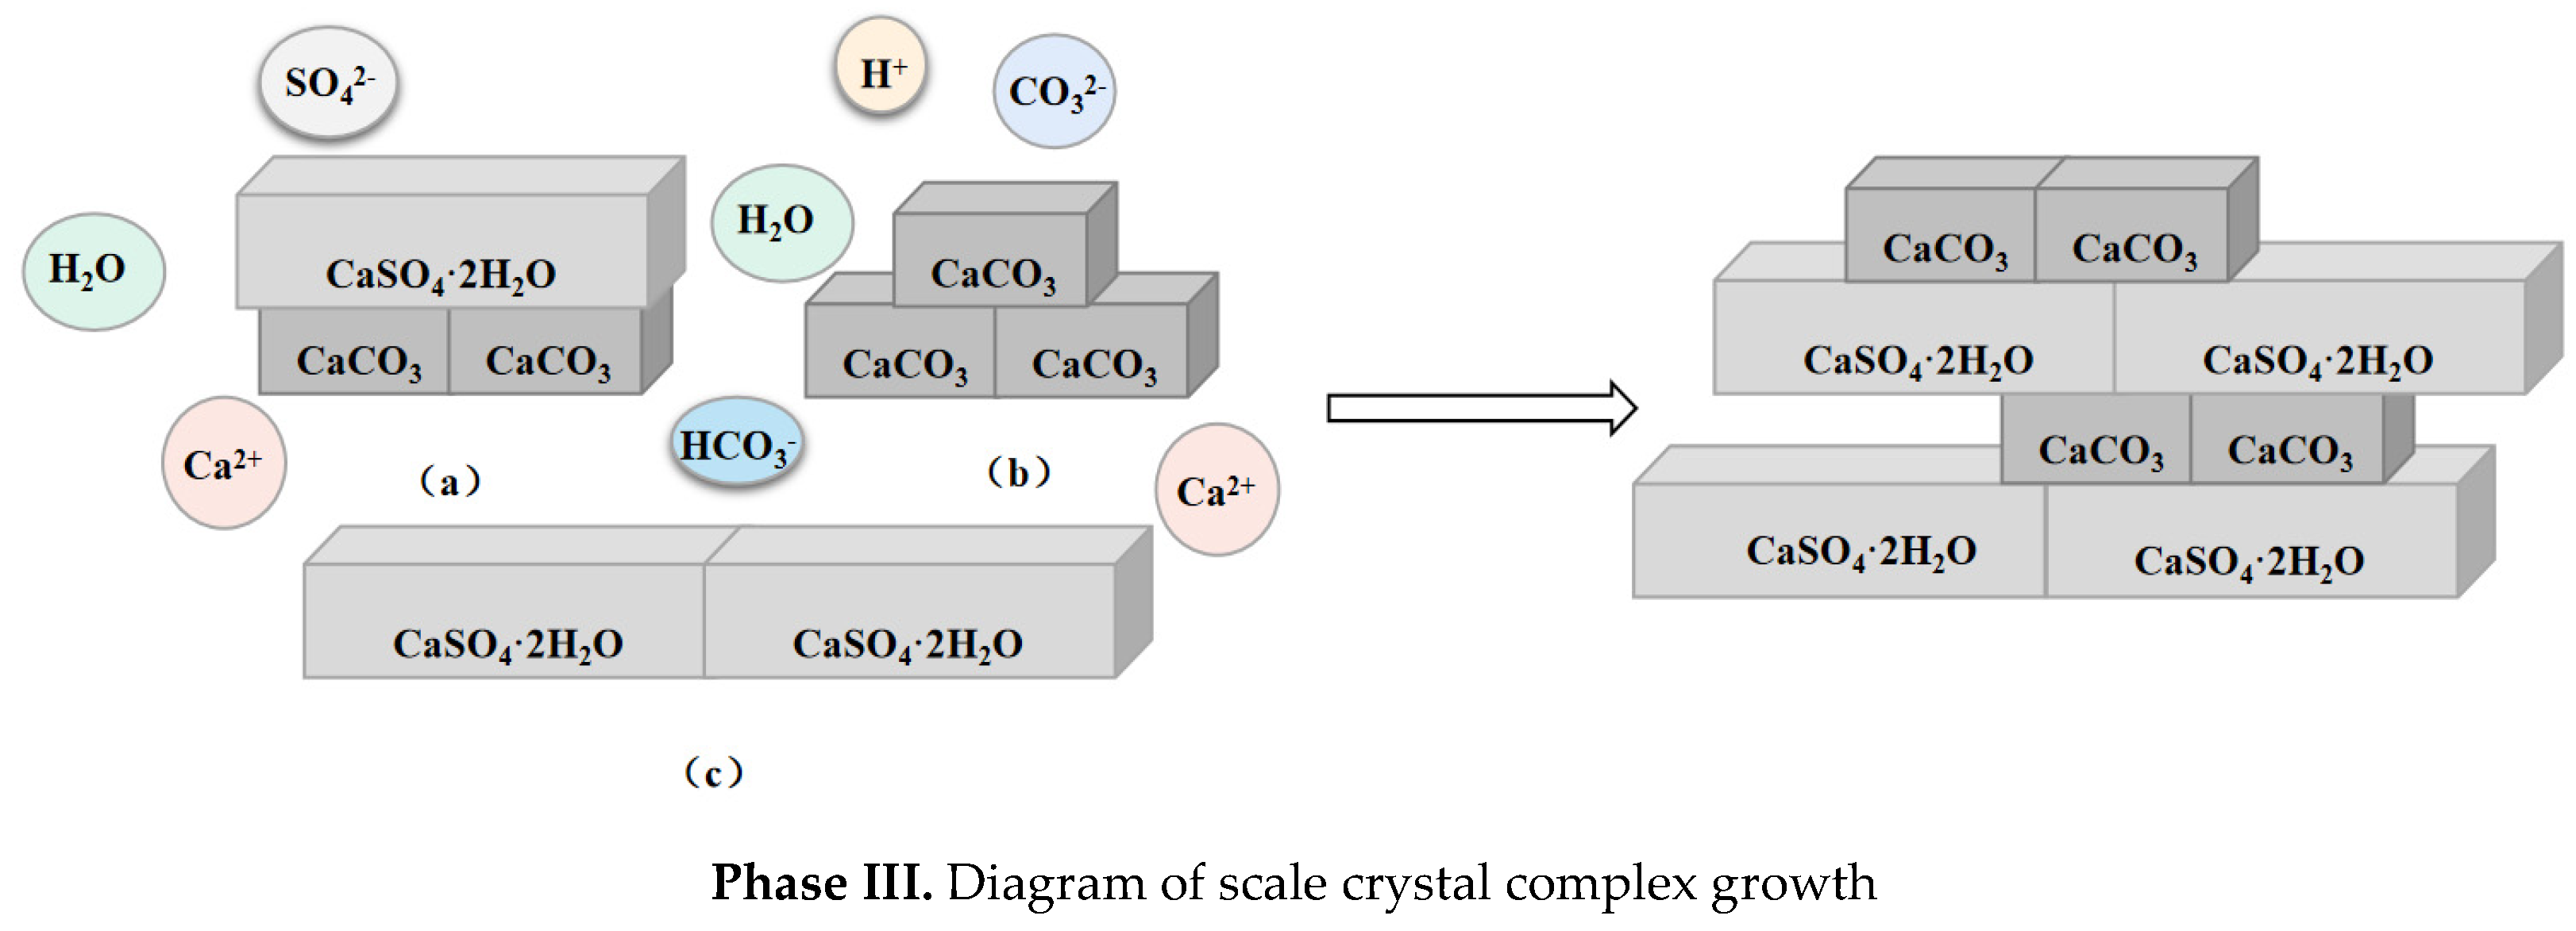 Magnesium Impurities Decide the Structure of Calcium Carbonate Hemihydrate